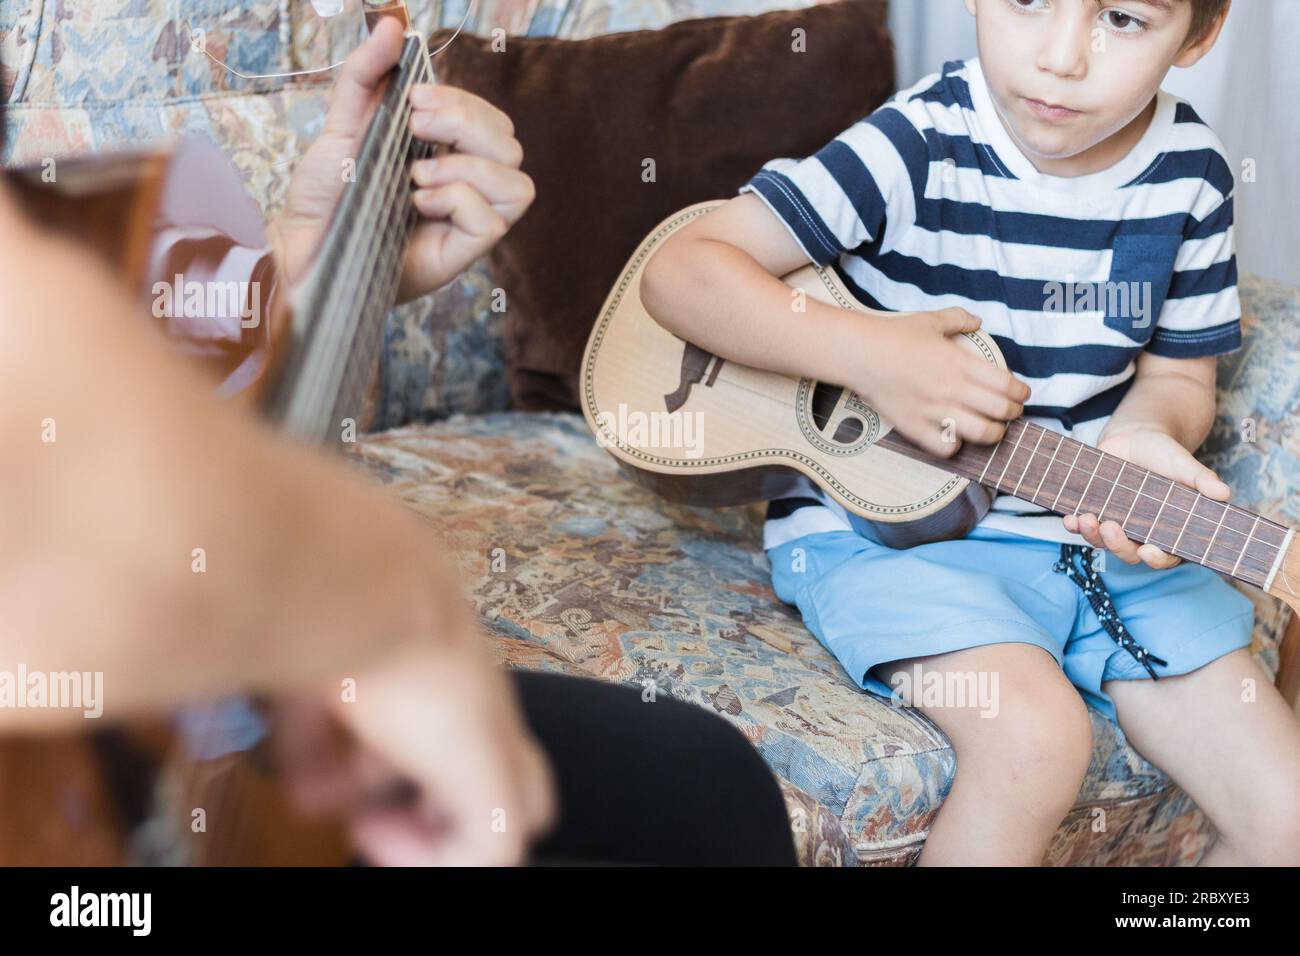 Kaukasisches Kind spielt und macht Musikakkorde mit kleiner Gitarre oder Ukulele, Nahaufnahme. Erwachsene unterrichten das Kind entspannt. Stockfoto